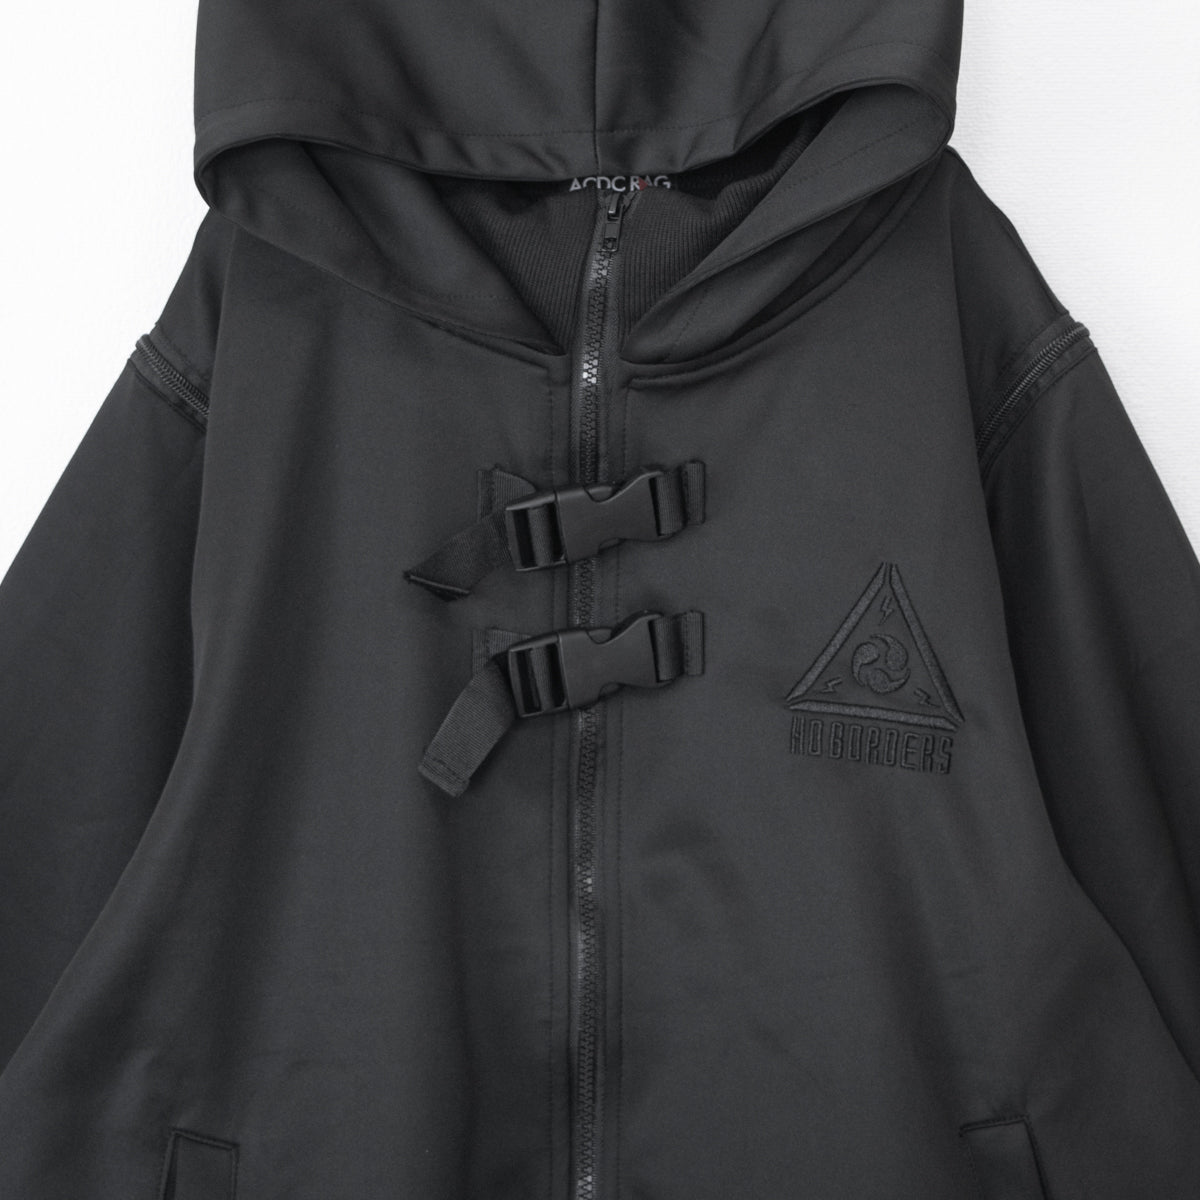 ACDC RAG Uzurai Kimono Jacket Black